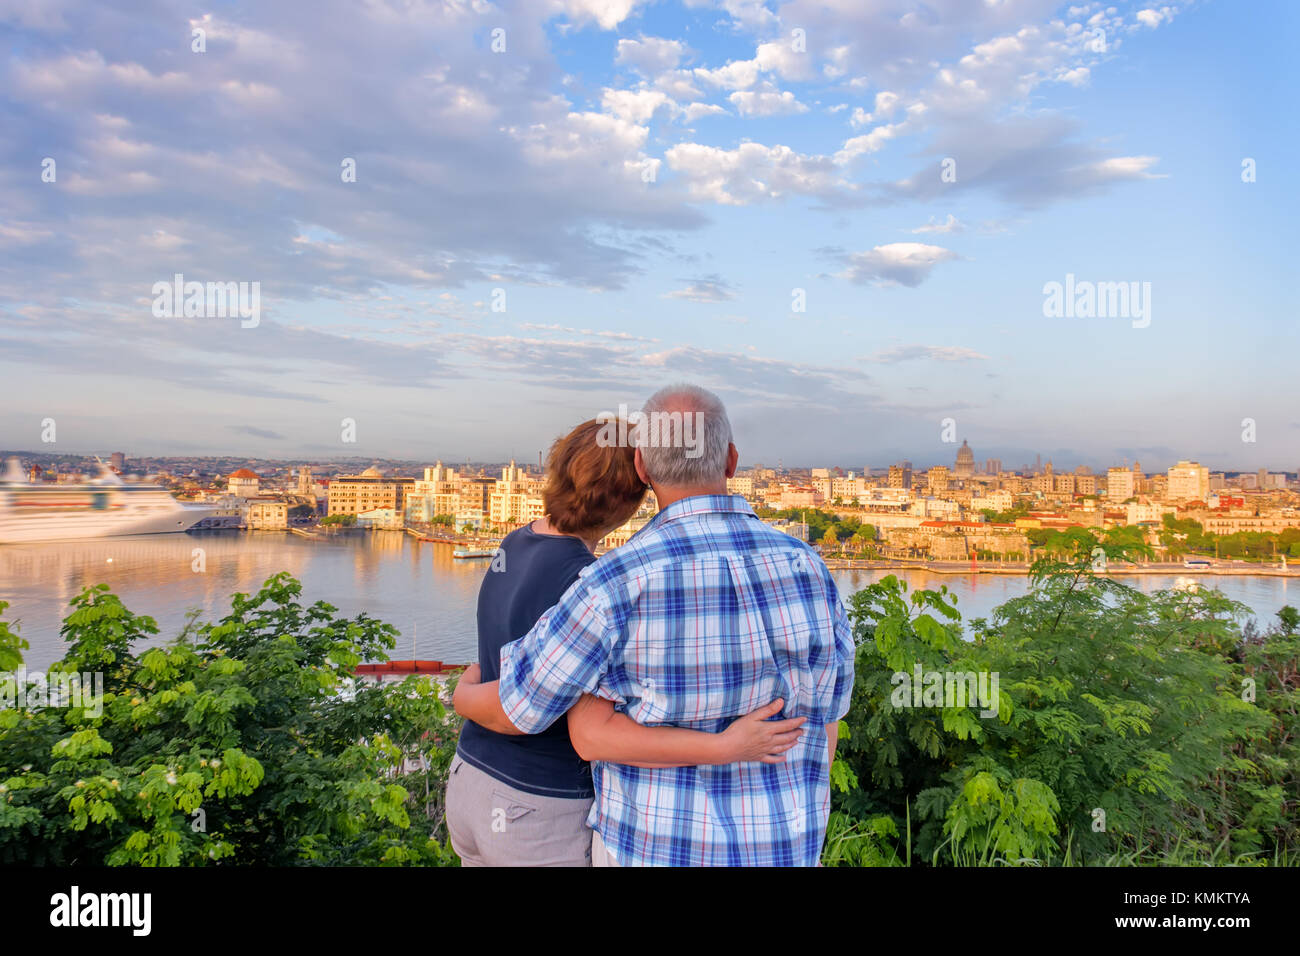 Un homme aux cheveux gris et une femme aux cheveux rouges se tiennent, embrassant et admirant la ville antique et le paquebot blanc sur l'océan au quai du port Banque D'Images